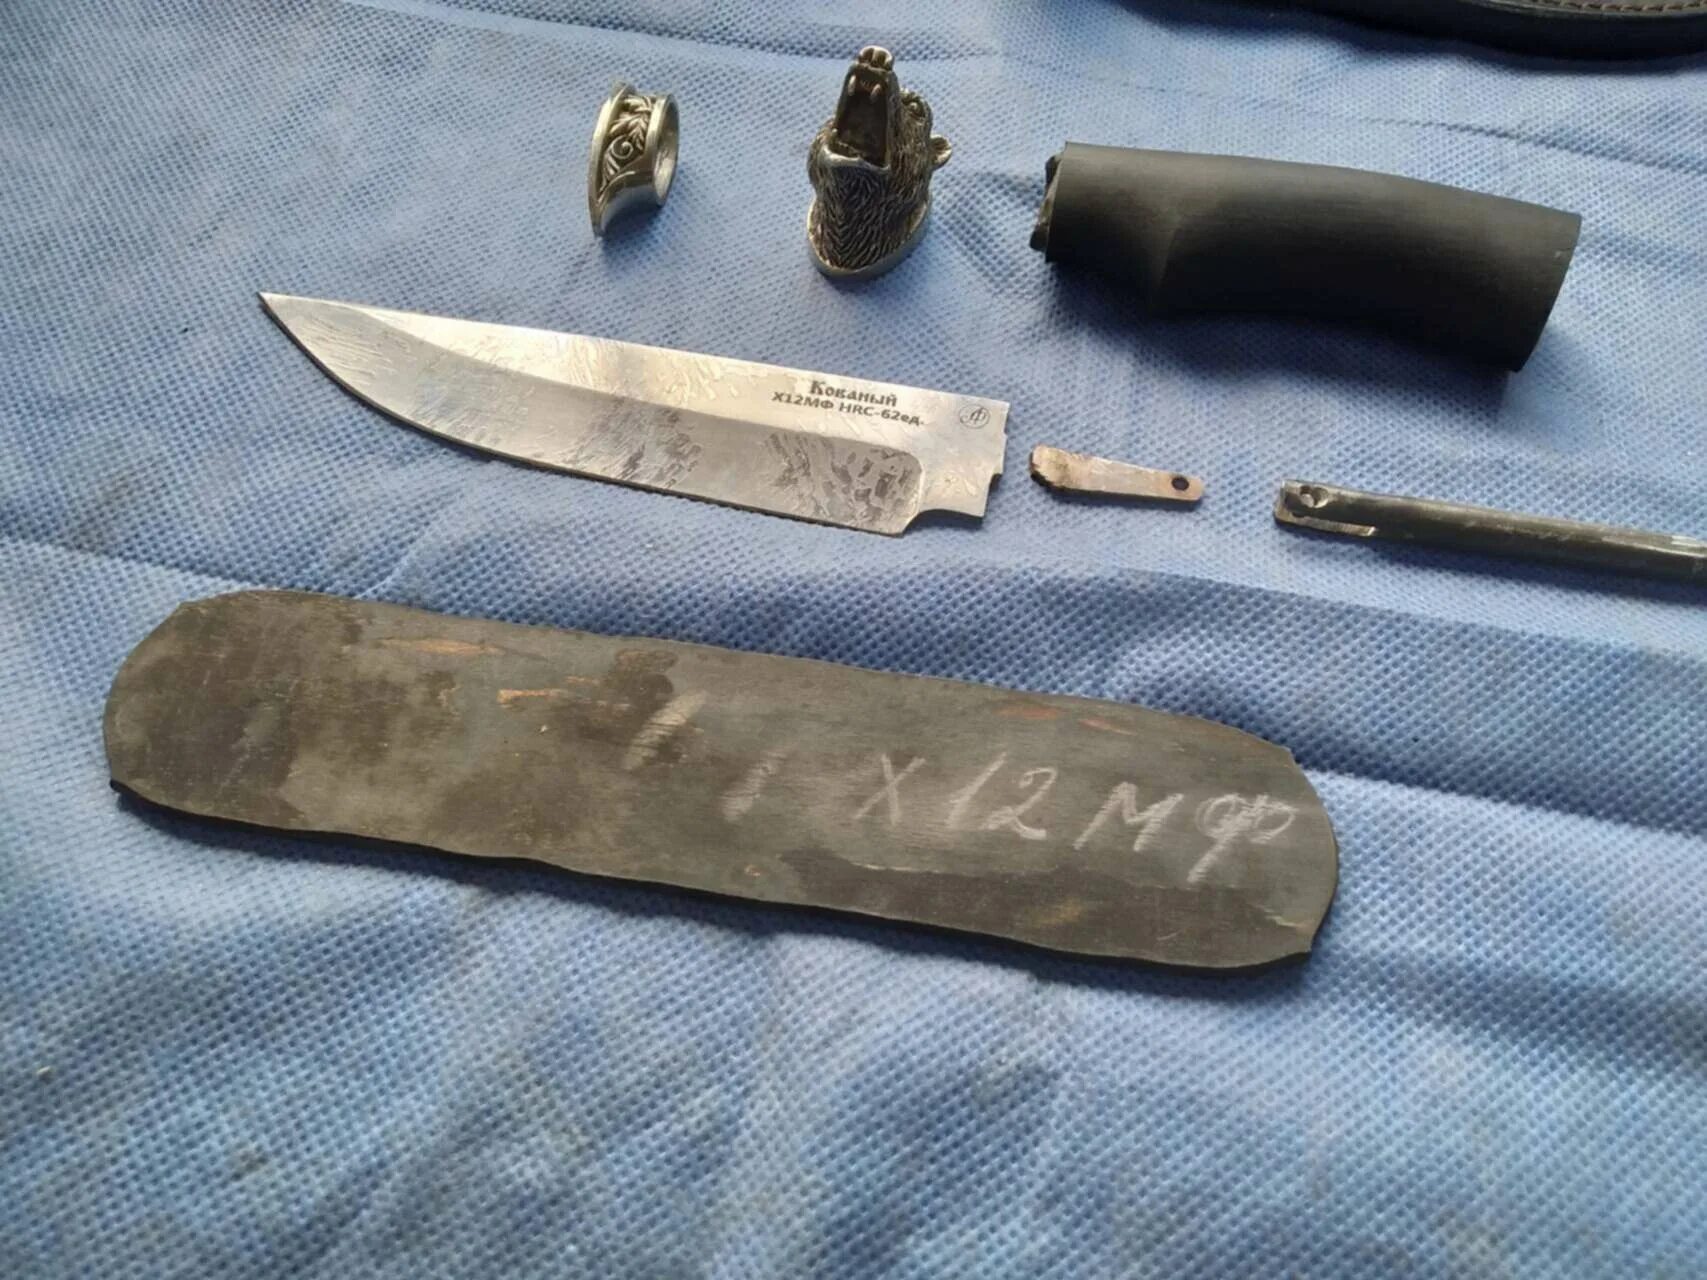 Ремонтный нож. Нож для ремонта. Реставрация ножа. Починят нож. Починка ножей Самара.